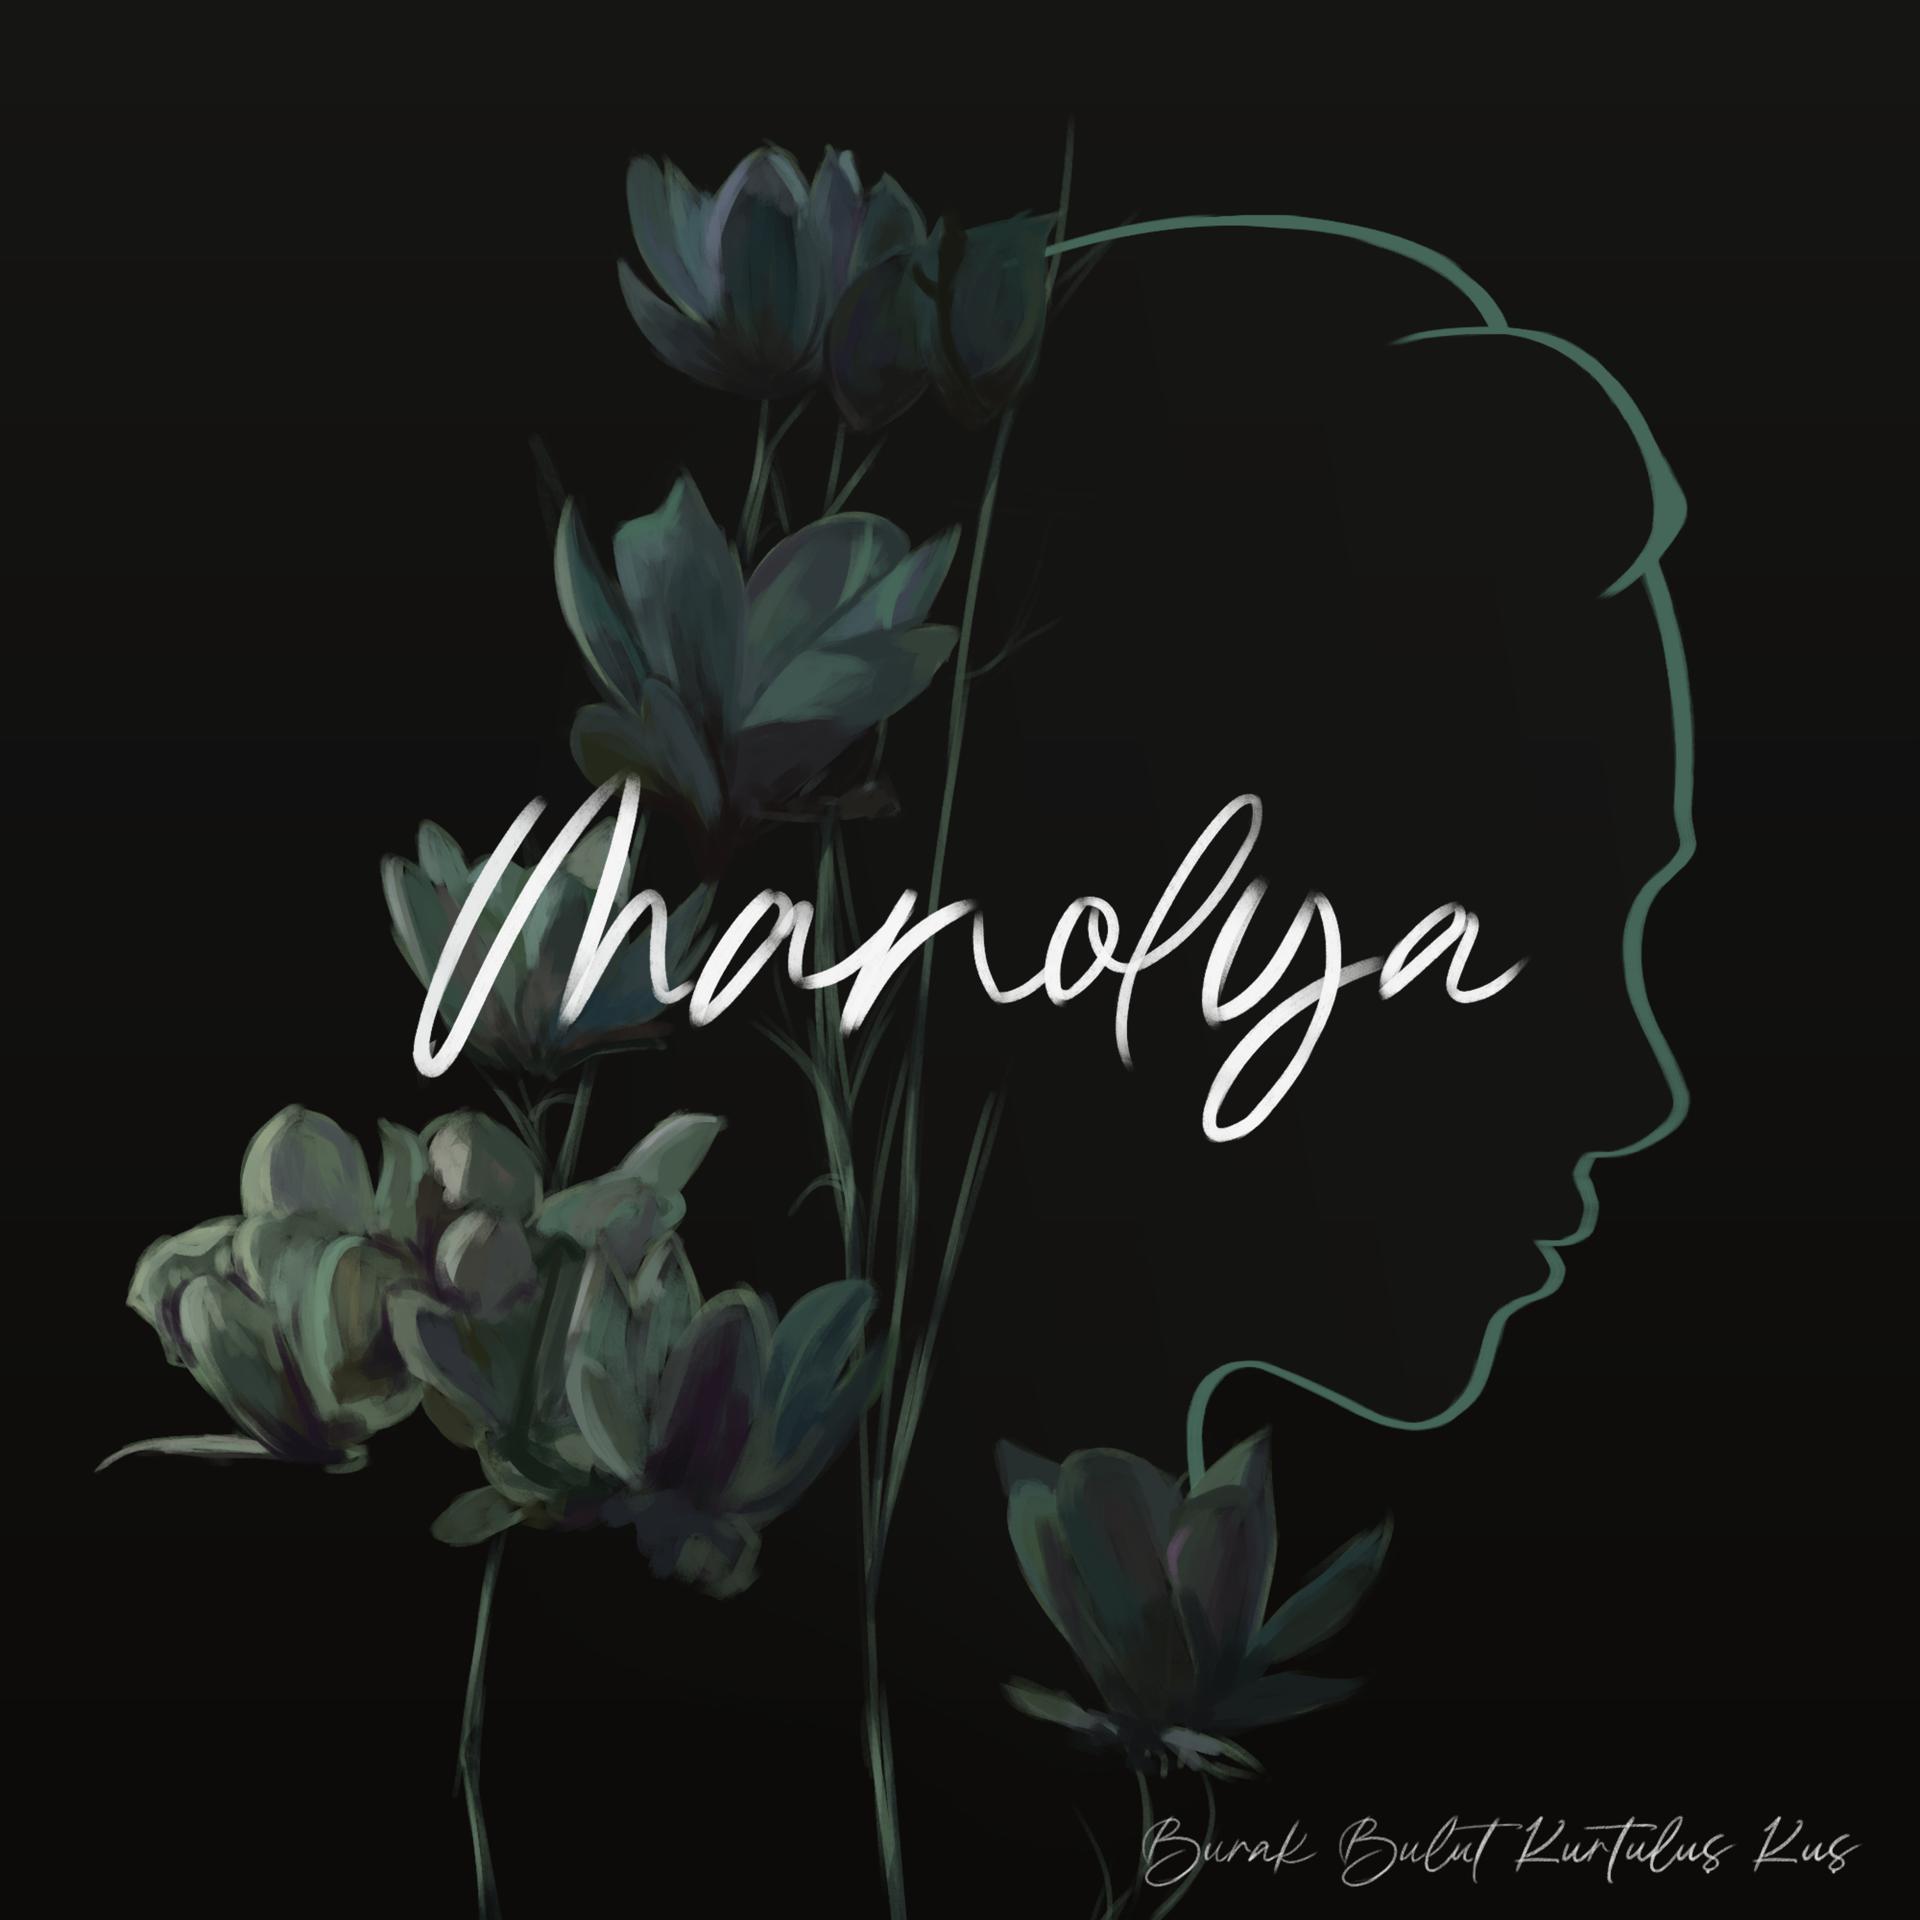 Постер альбома Manolya